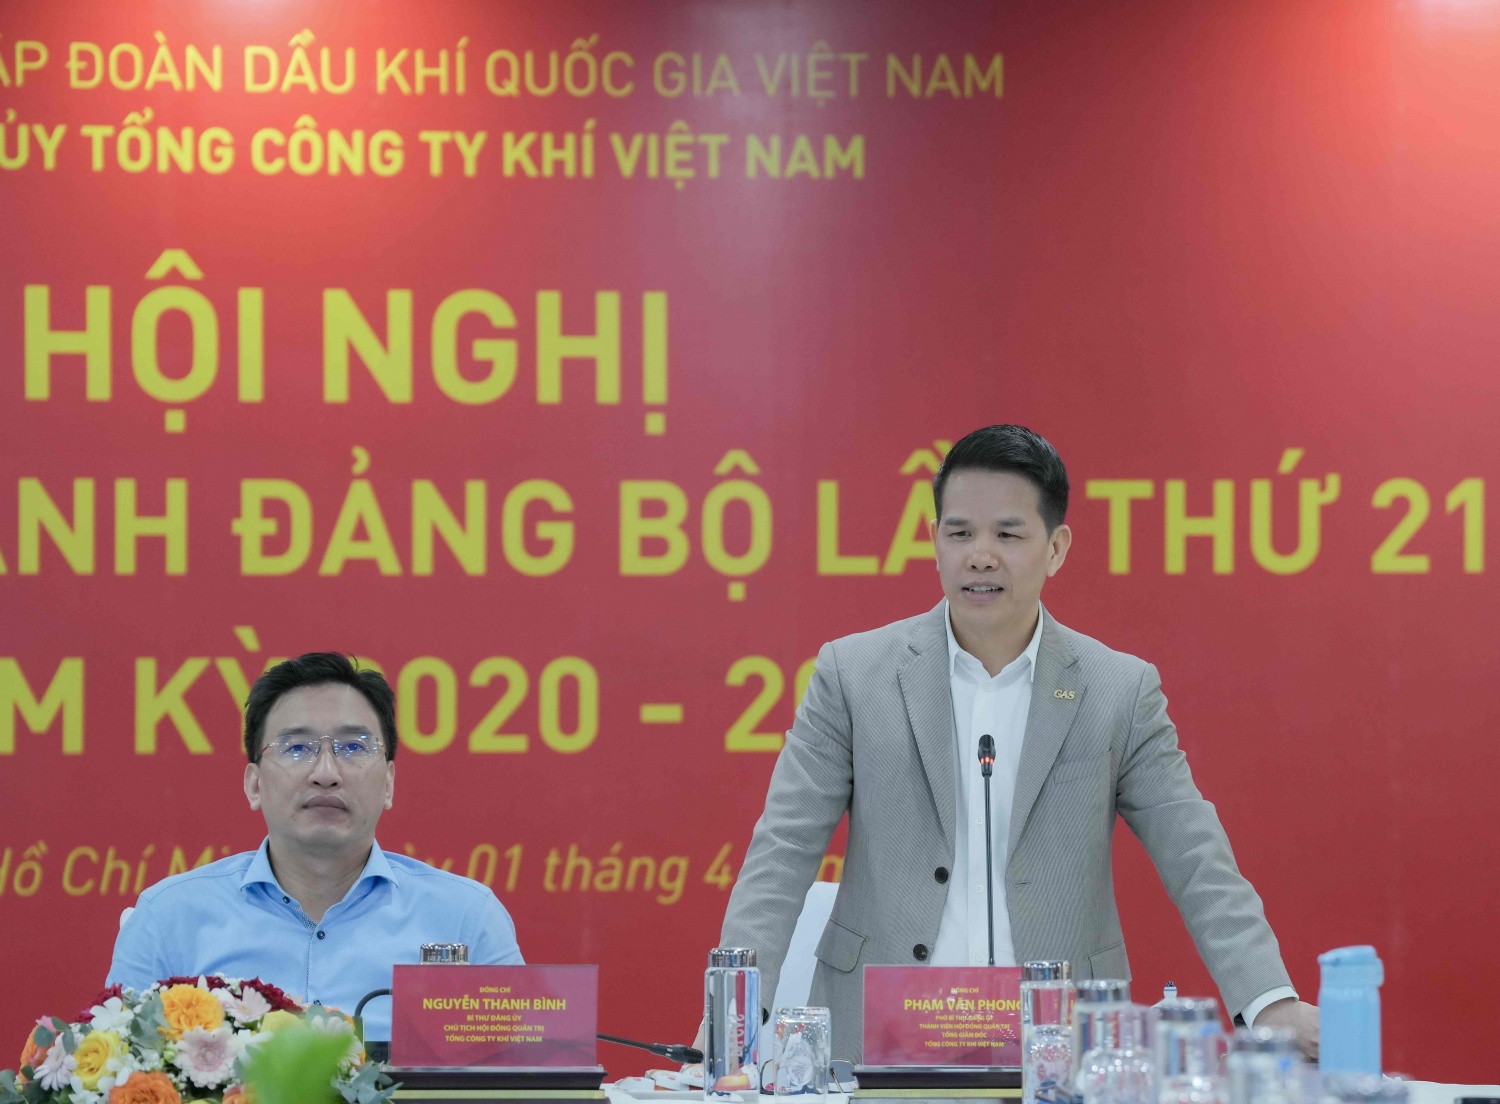 Đồng chí Phạm Văn Phong, Phó Bí thư Đảng ủy, Tổng Giám đốc TCT định hướng thảo luận về các nhóm giải pháp khắc phục khó khăn